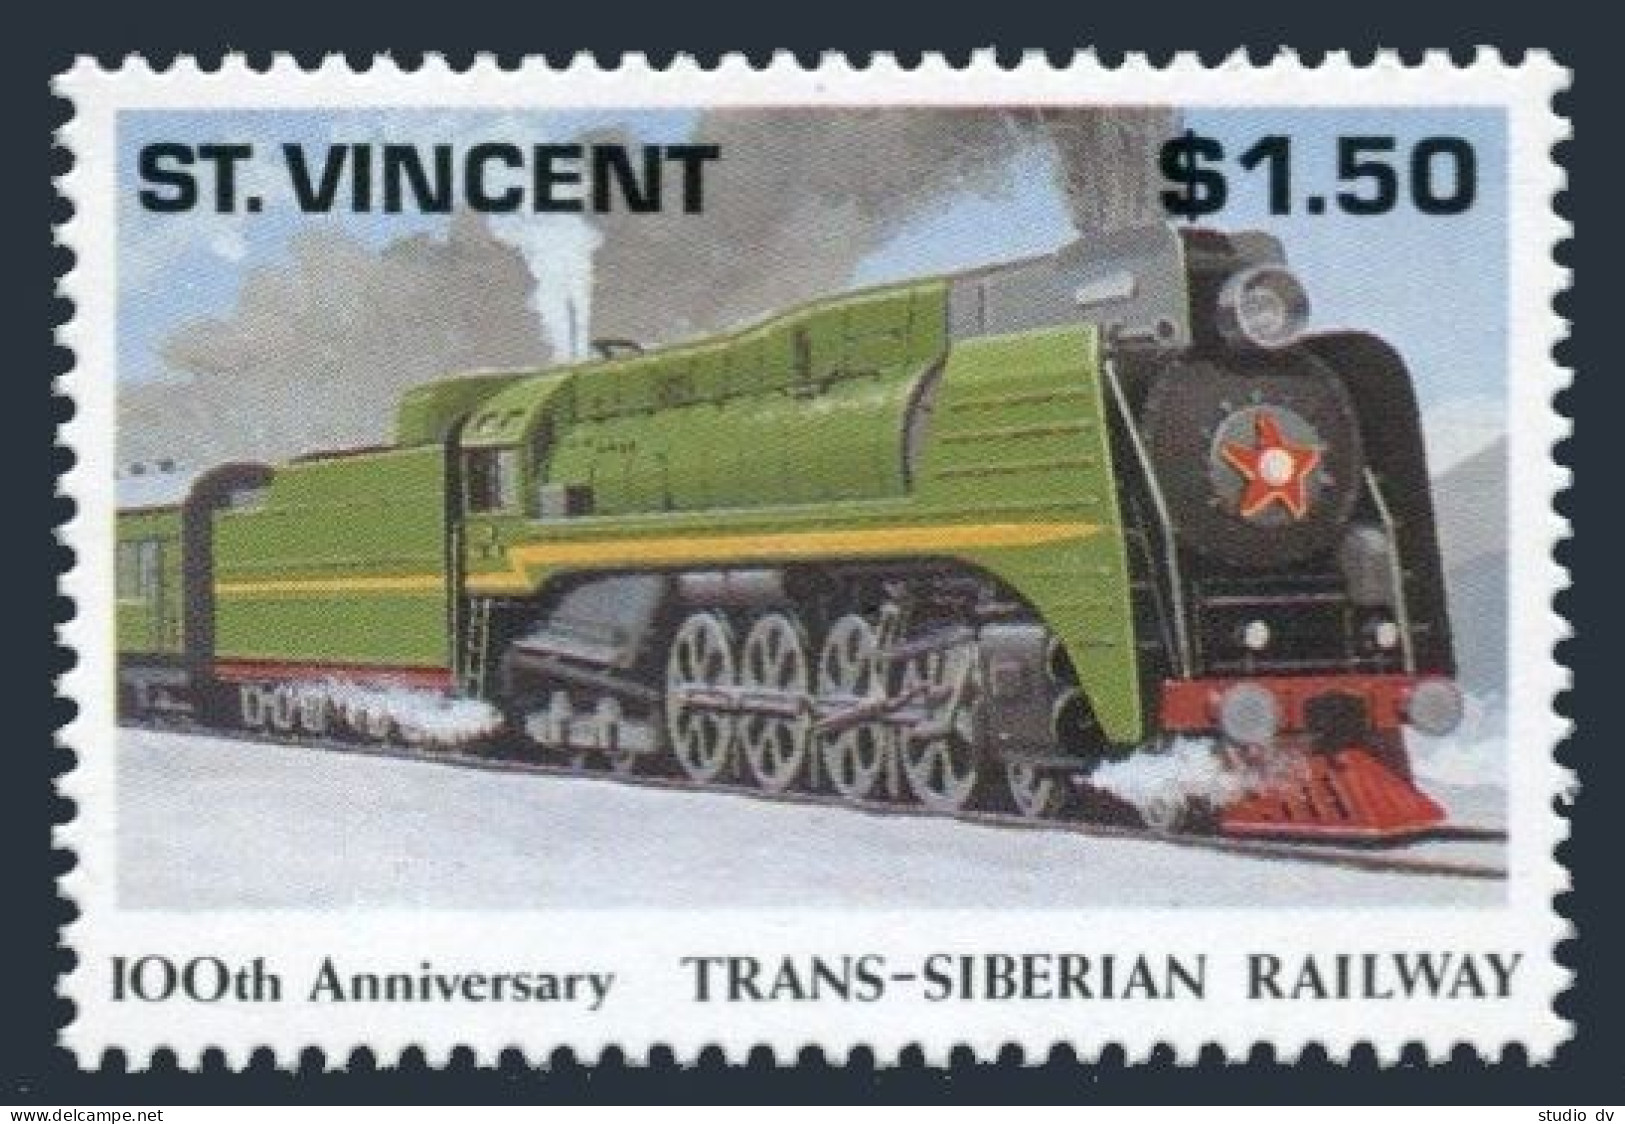 St Vincent 1555,MNH.Mi 1861. Trans-Siberian Railway,100th Ann.1991.Locomotive. - St.Vincent (1979-...)